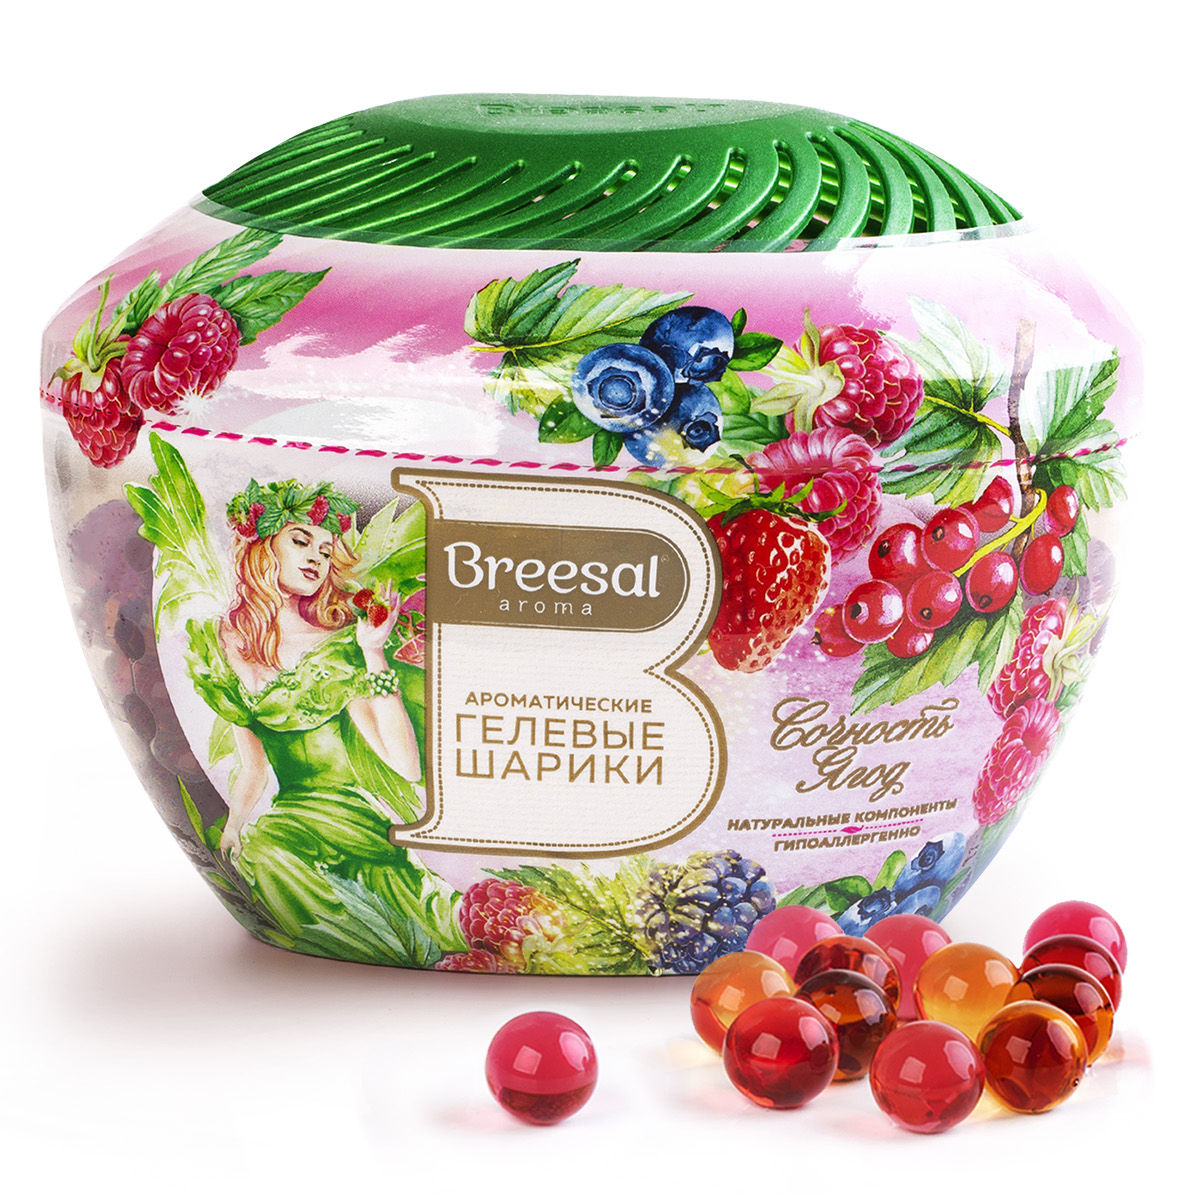 Ароматические гелевые шарики Breesal Fresh Drops Сочность ягод, 215 мл уют пелёнки впитывающие гелевые для животных 20 шт